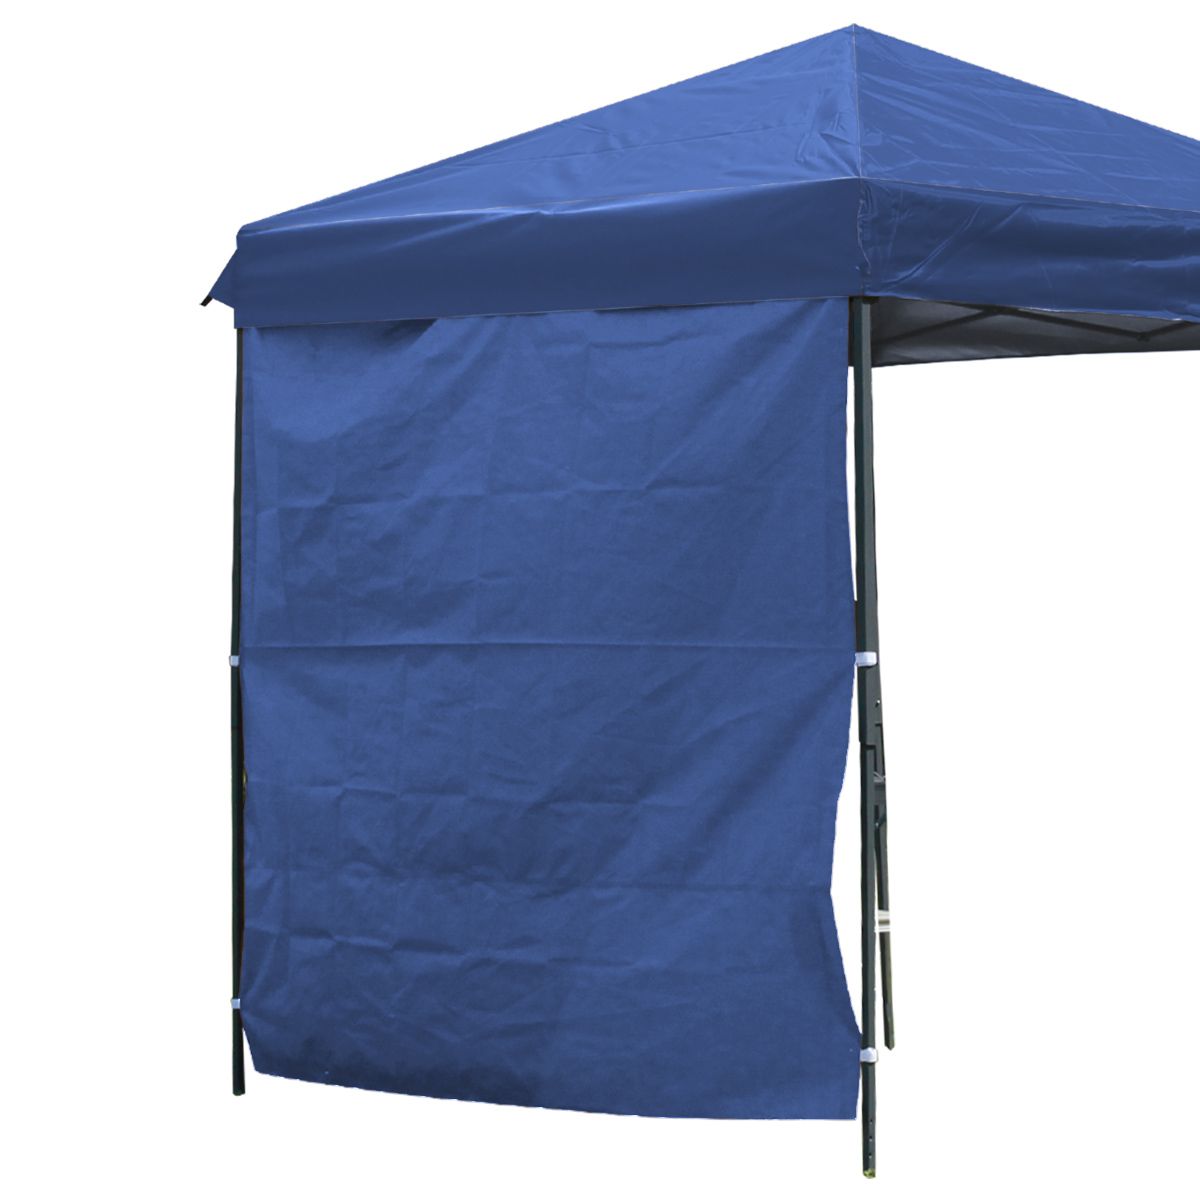 タープテント 3m サイドシート1枚付き 高さ調整可能 テント タープ 